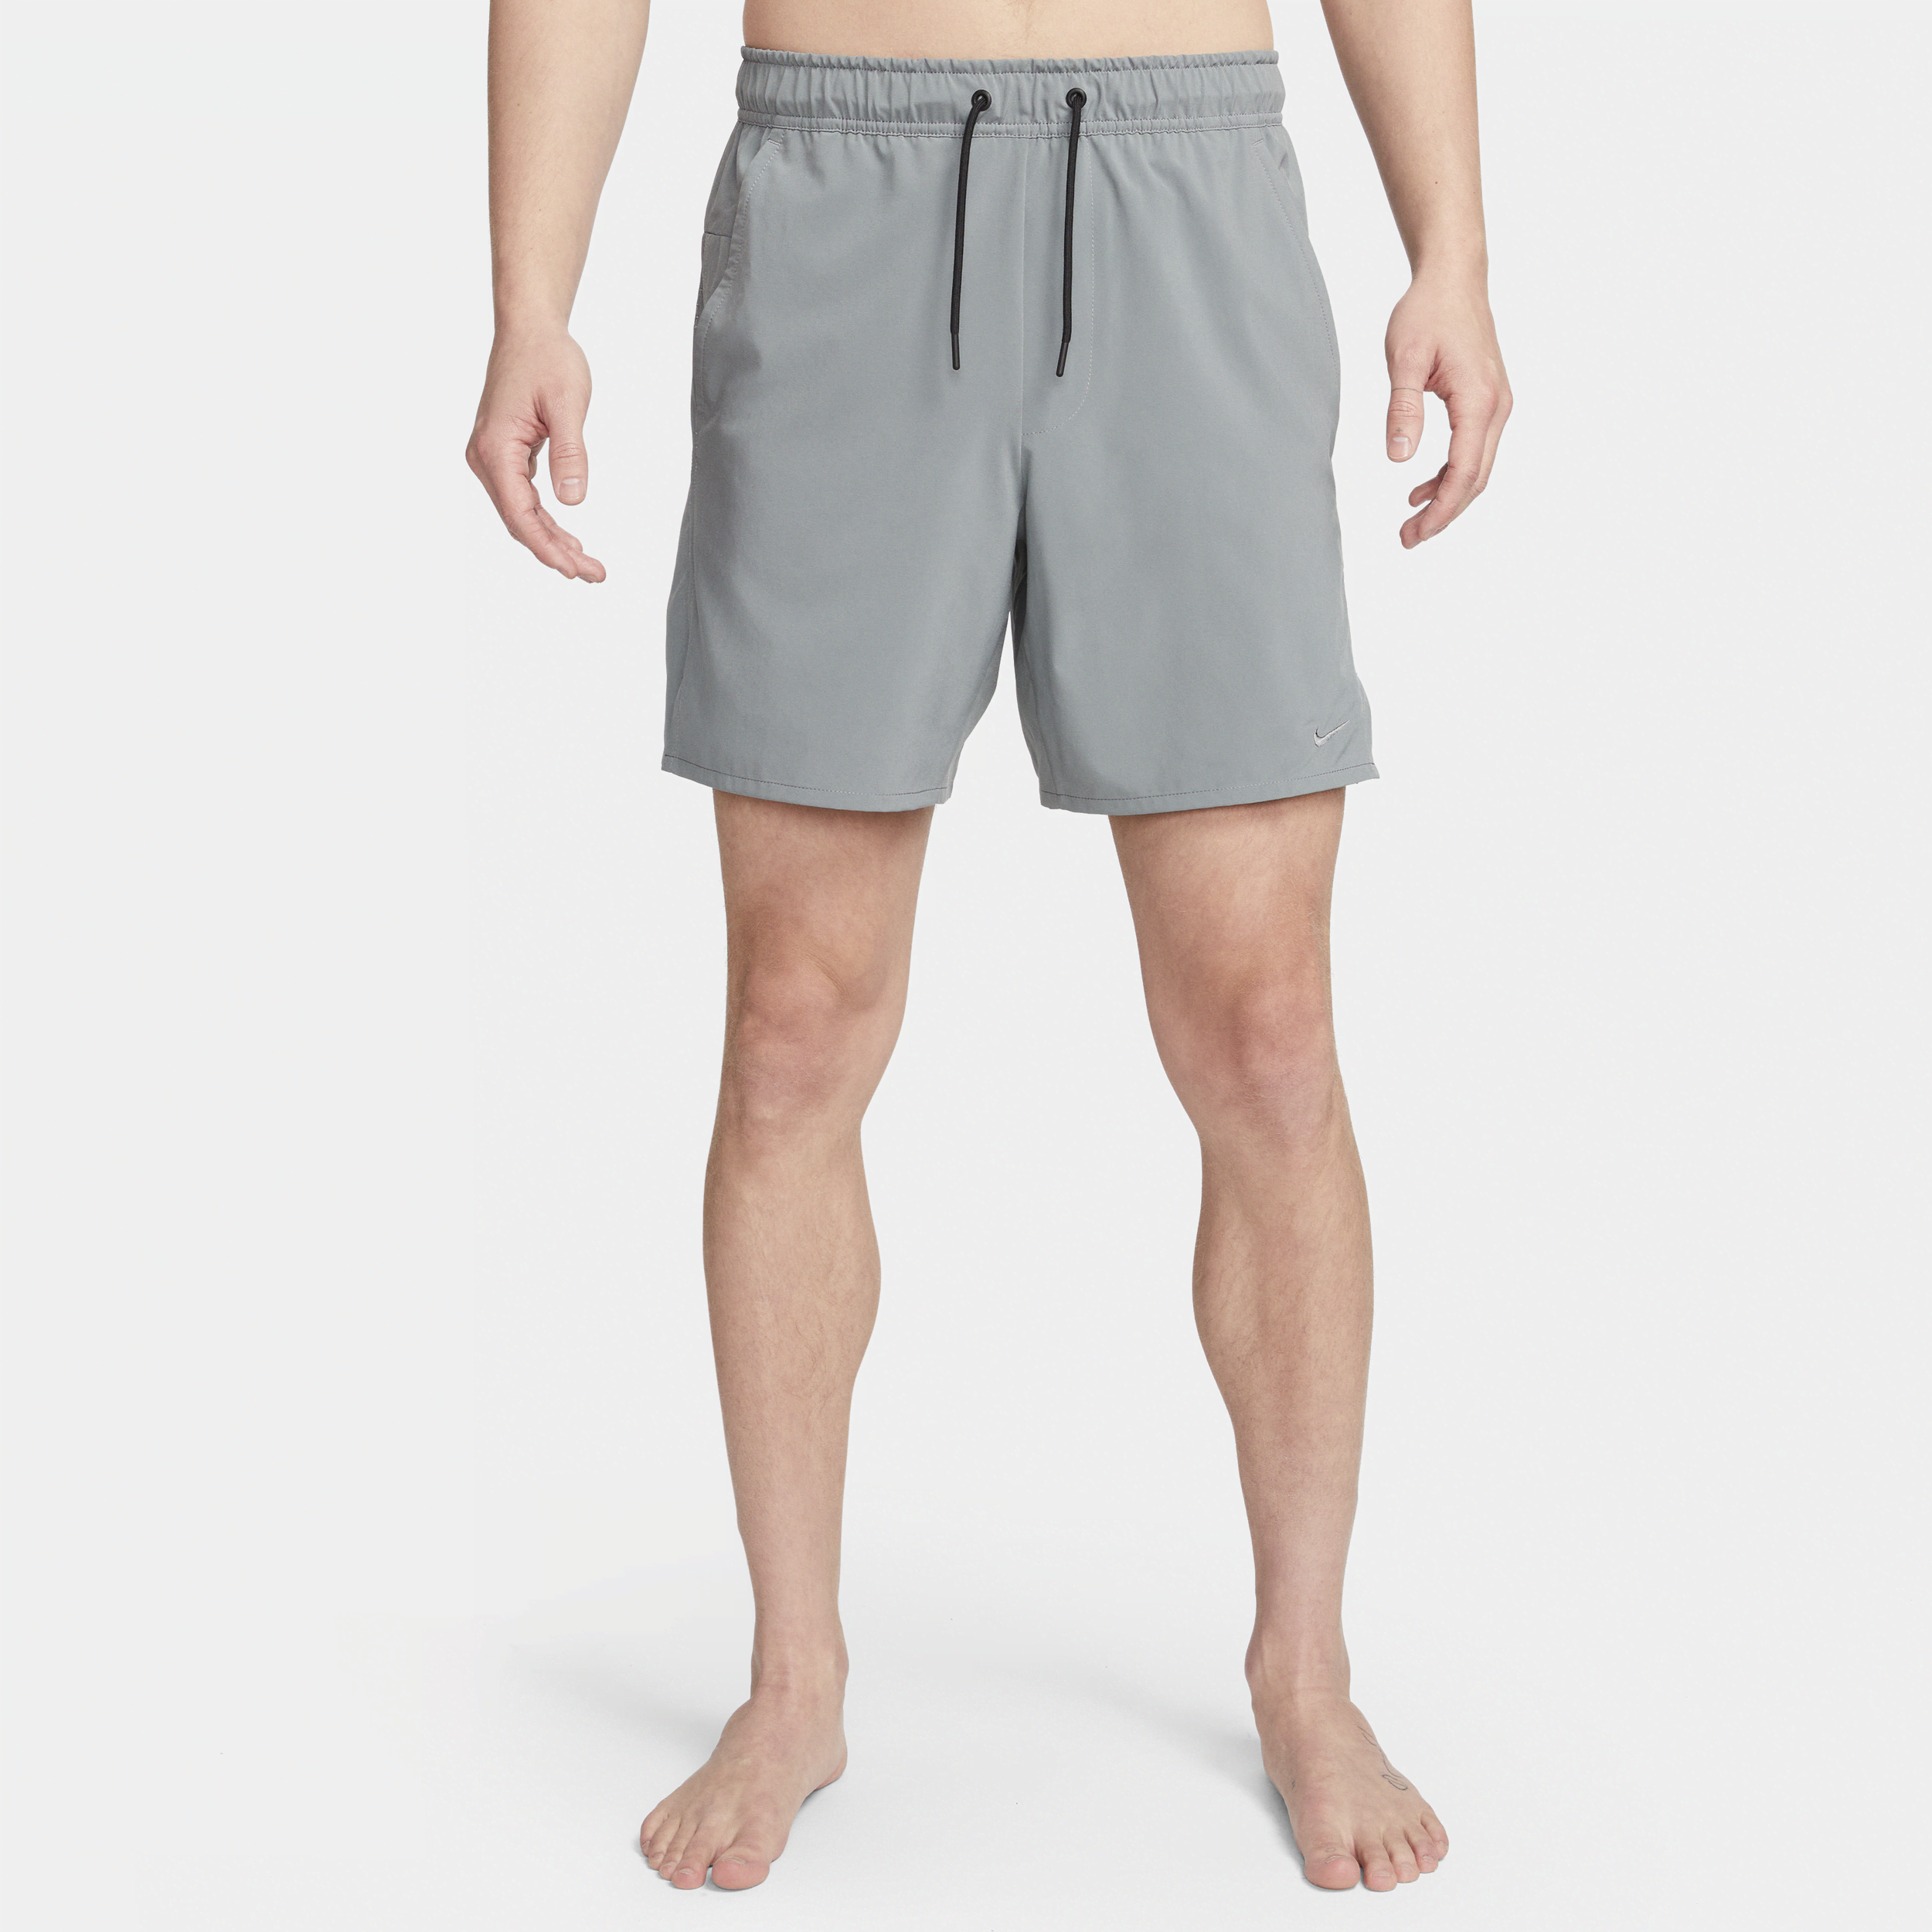 Alsidige Nike Unlimited-Dri-FIT-shorts (18 cm) uden for til mænd - grå